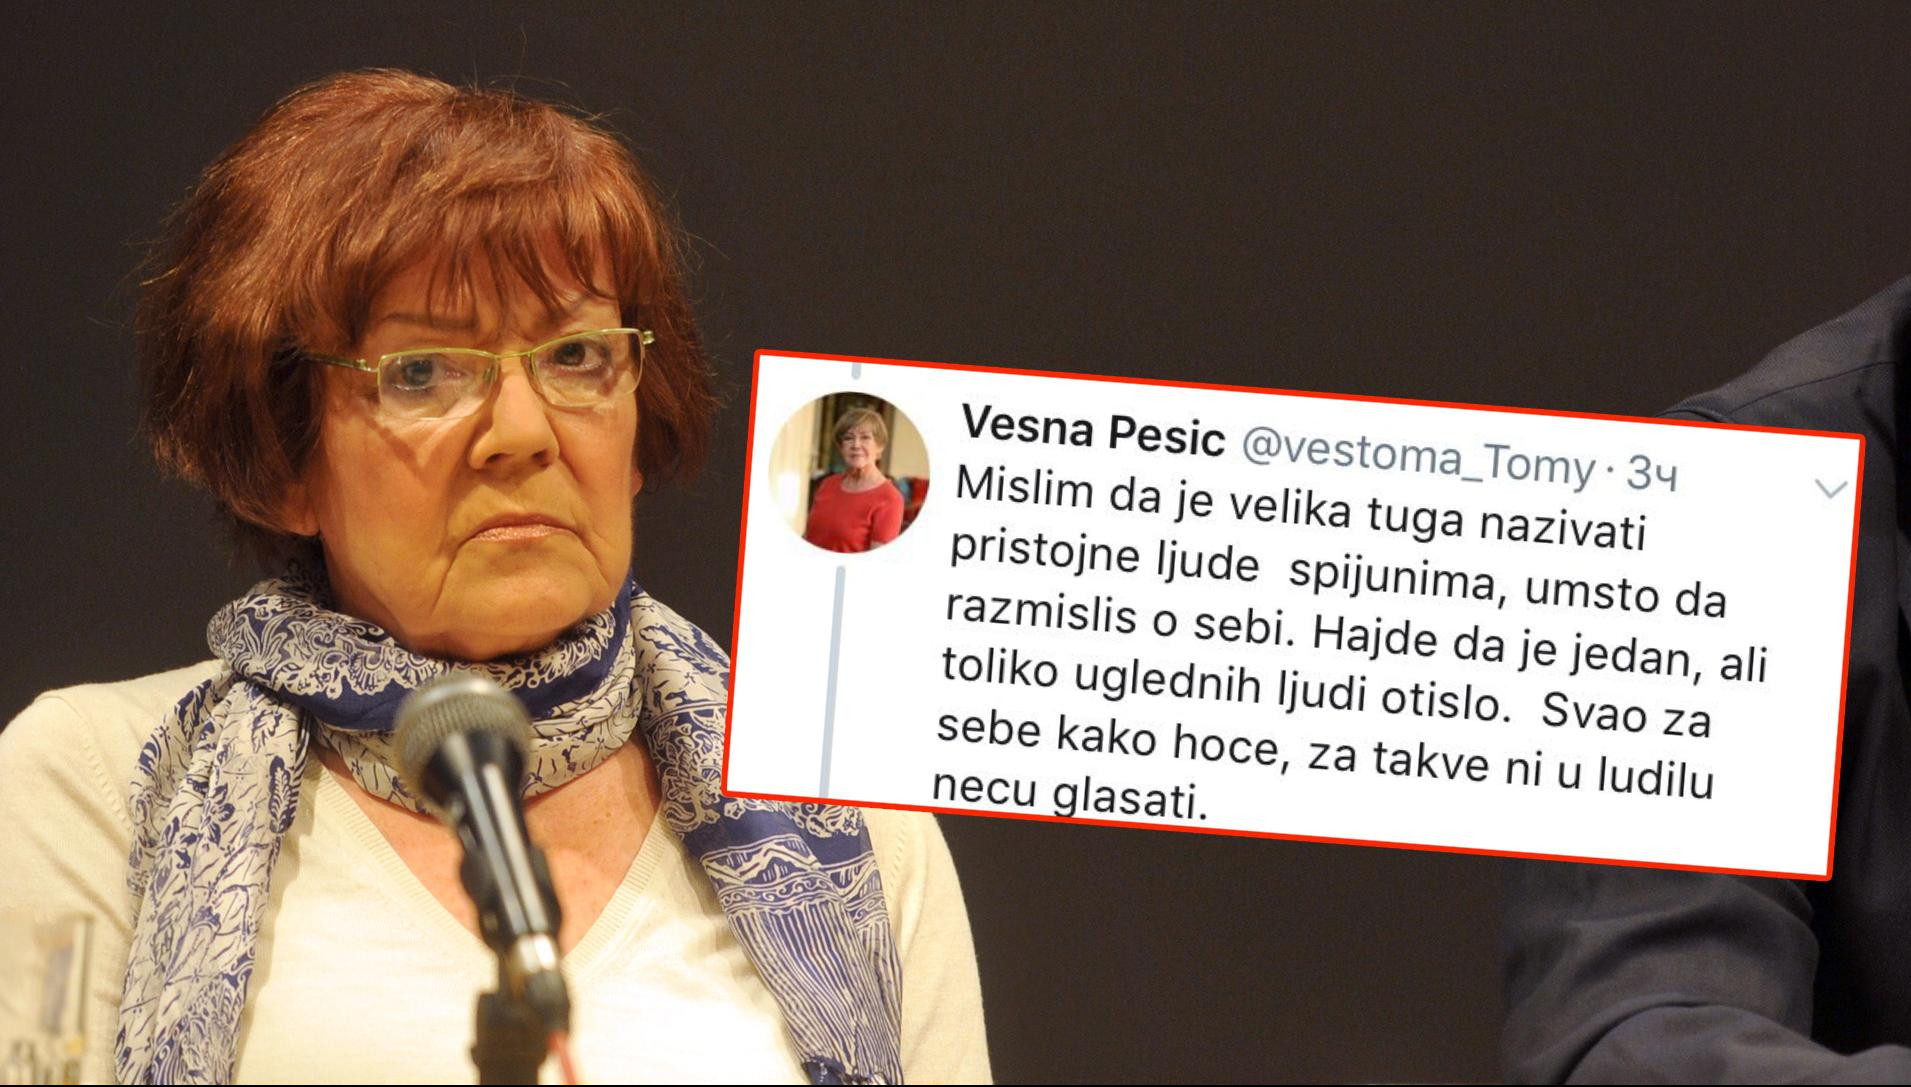 ZA NJIH NI U LUDILU NE BIH GLASALA! Vesna Pešić na Tviteru razvalila Sašu Jankovića i njegovu ženu!